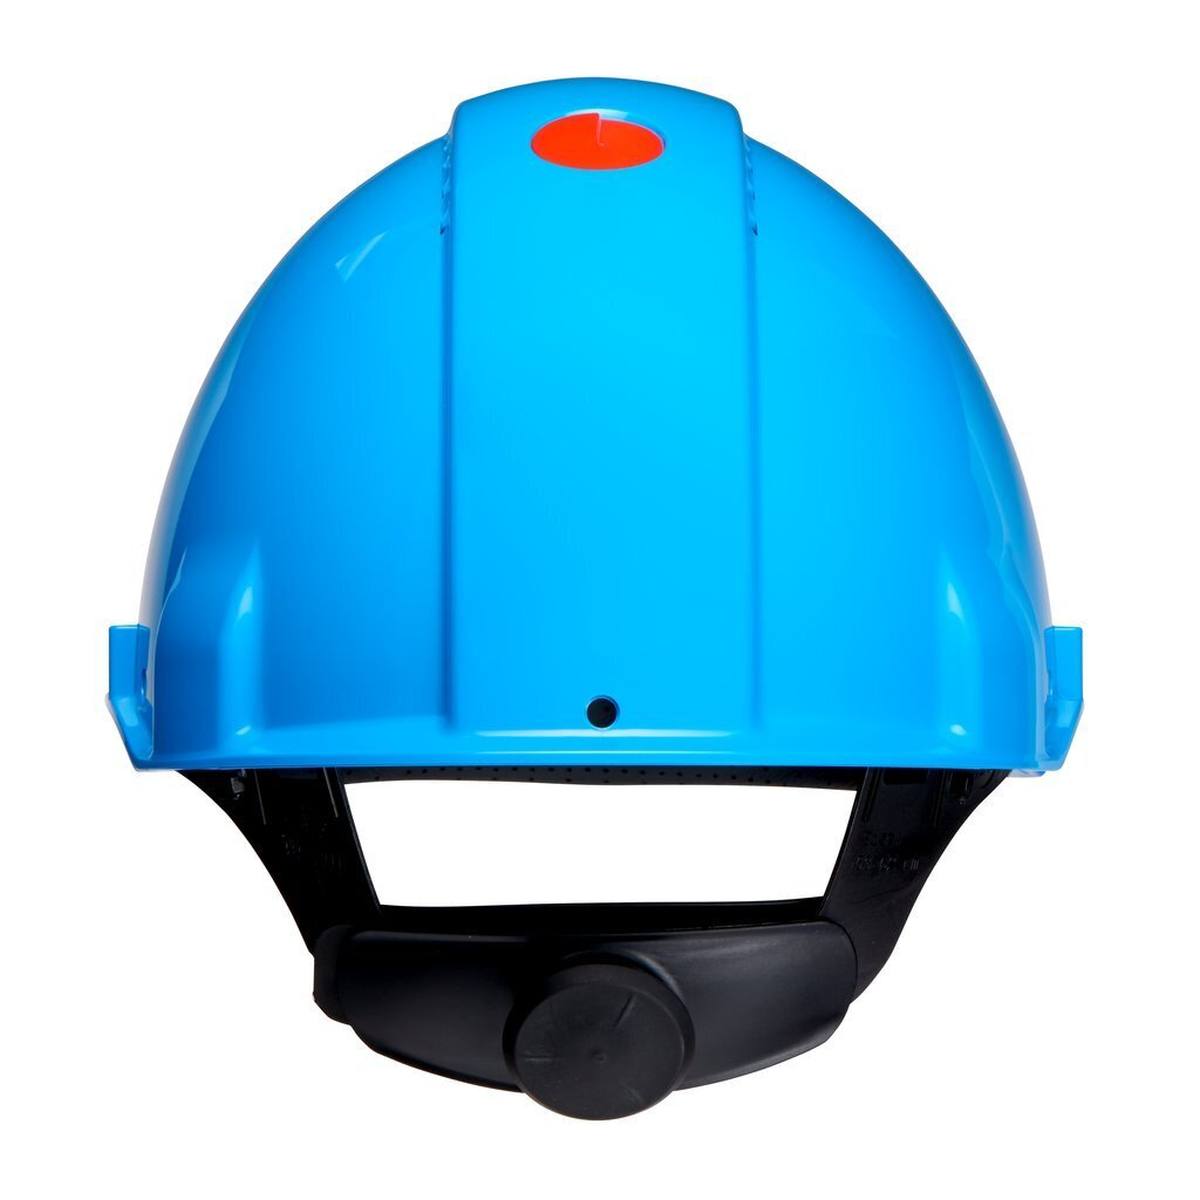 3M G3000 casque de protection G30NUB en bleu, ventilé, avec uvicator, cliquet et bande de soudure en plastique